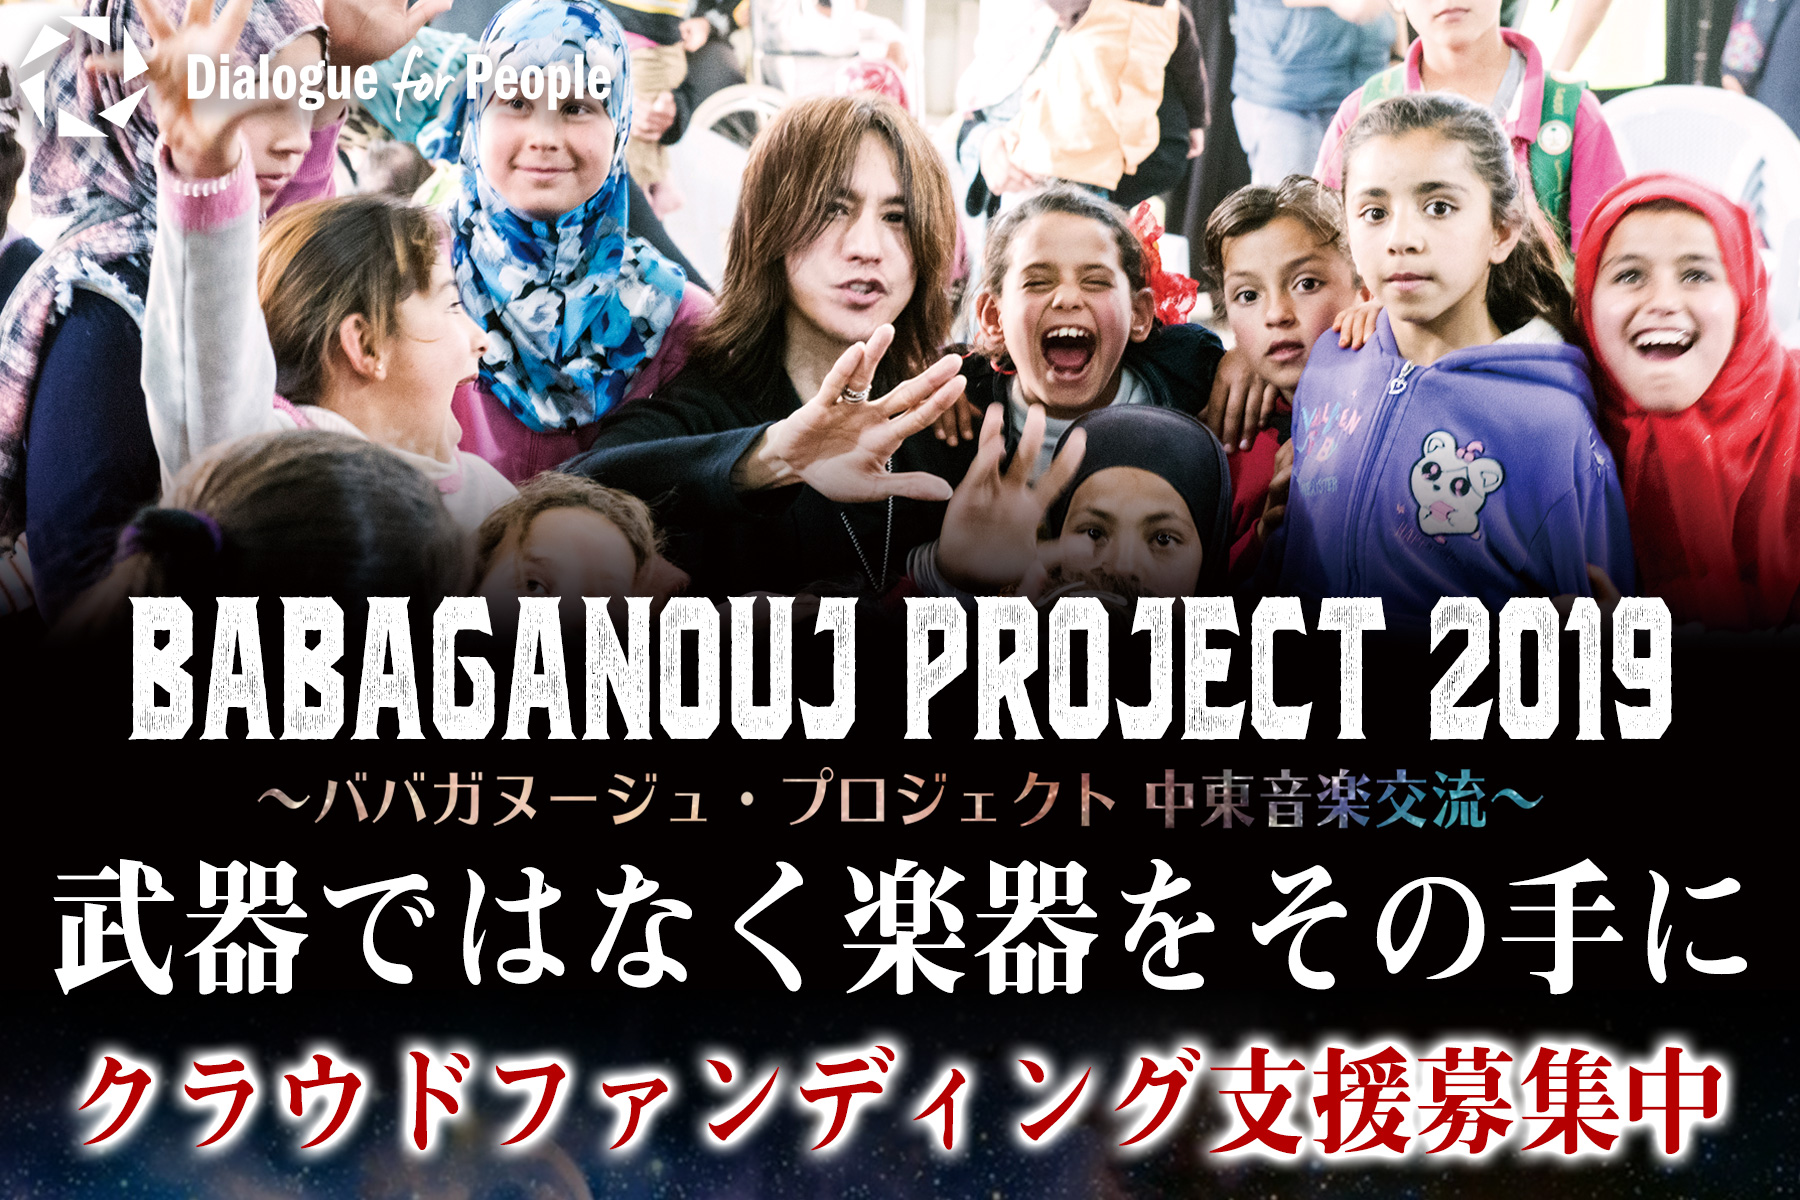 クラウドファンディング 達成 受付終了 Babaganouj Project 19 中東音楽交流事業 イラク ヨルダン Dialogue For People ダイアローグフォーピープル